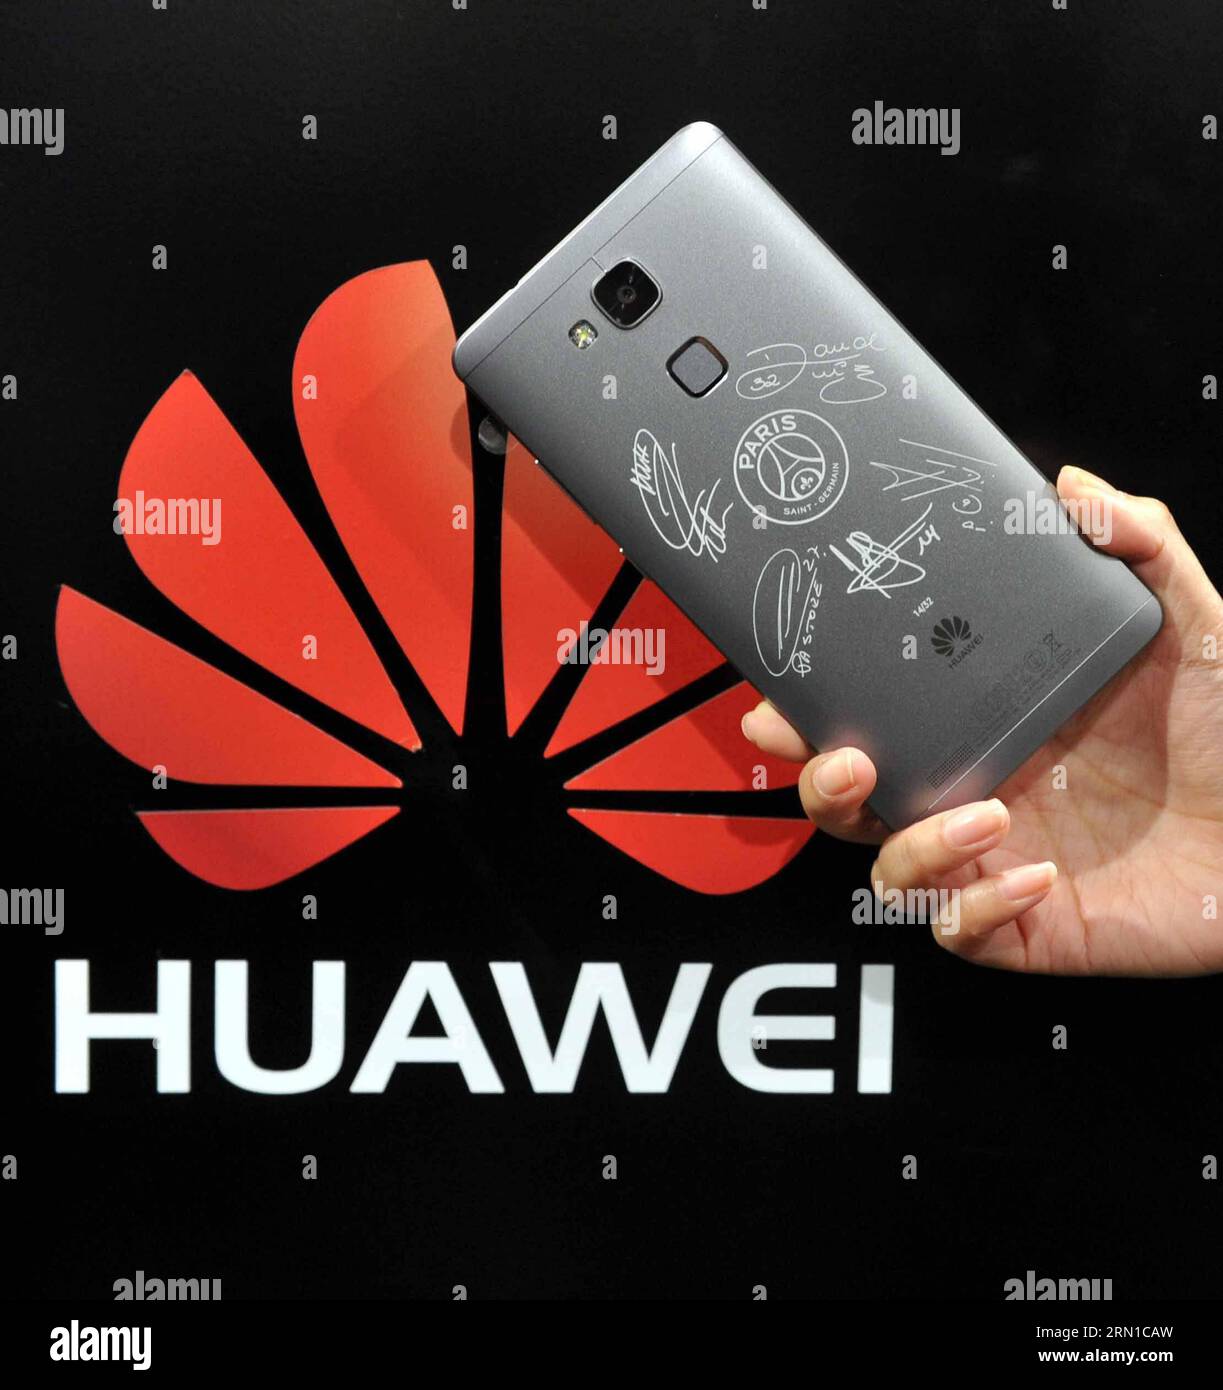 PARIGI, 16 dicembre 2014 -- Uno smartphone Huawei Ascend Mate 7 dell'edizione Paris Saint-Germain (PSG) viene esposto durante la cerimonia di lancio a Parigi, in Francia, 16 dicembre 2014. Huawei, il principale produttore cinese di apparecchiature per telecomunicazioni, ha lanciato un'edizione limitata dello smartphone Ascend Mate 7 con le firme di 5 lettori PSG. Chen Xiaowei) (lyi) FRANCE-PARIS-PSG-CHINA-HUAWEI-SMART PHONE chenxiaowei PUBLICATIONxNOTxINxCHN Paris DEC 16 2014 uno smartphone Huawei Ascend Mate 7 della Paris Saint Germain PSG Edition VIENE visualizzato durante la cerimonia di lancio a Parigi Francia DEC 16 2014 China S Leadin Foto Stock